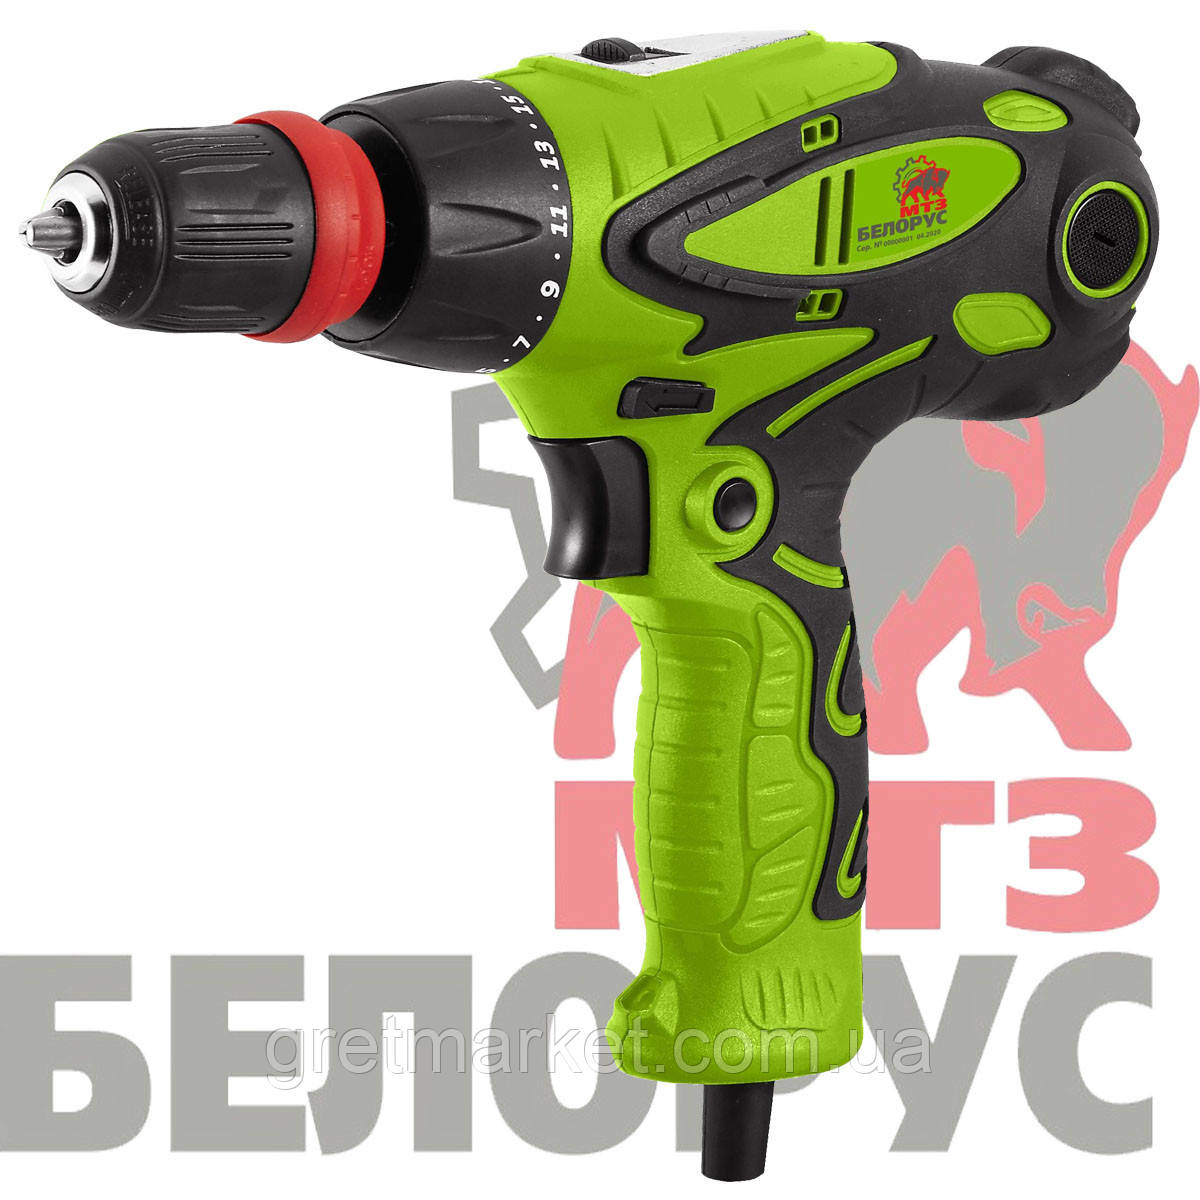 Мережевий шуруповерт БЕЛОРУС МТЗ ДЕ -1300 / 2 ДФР (2х швидкісний, знімний патрон)